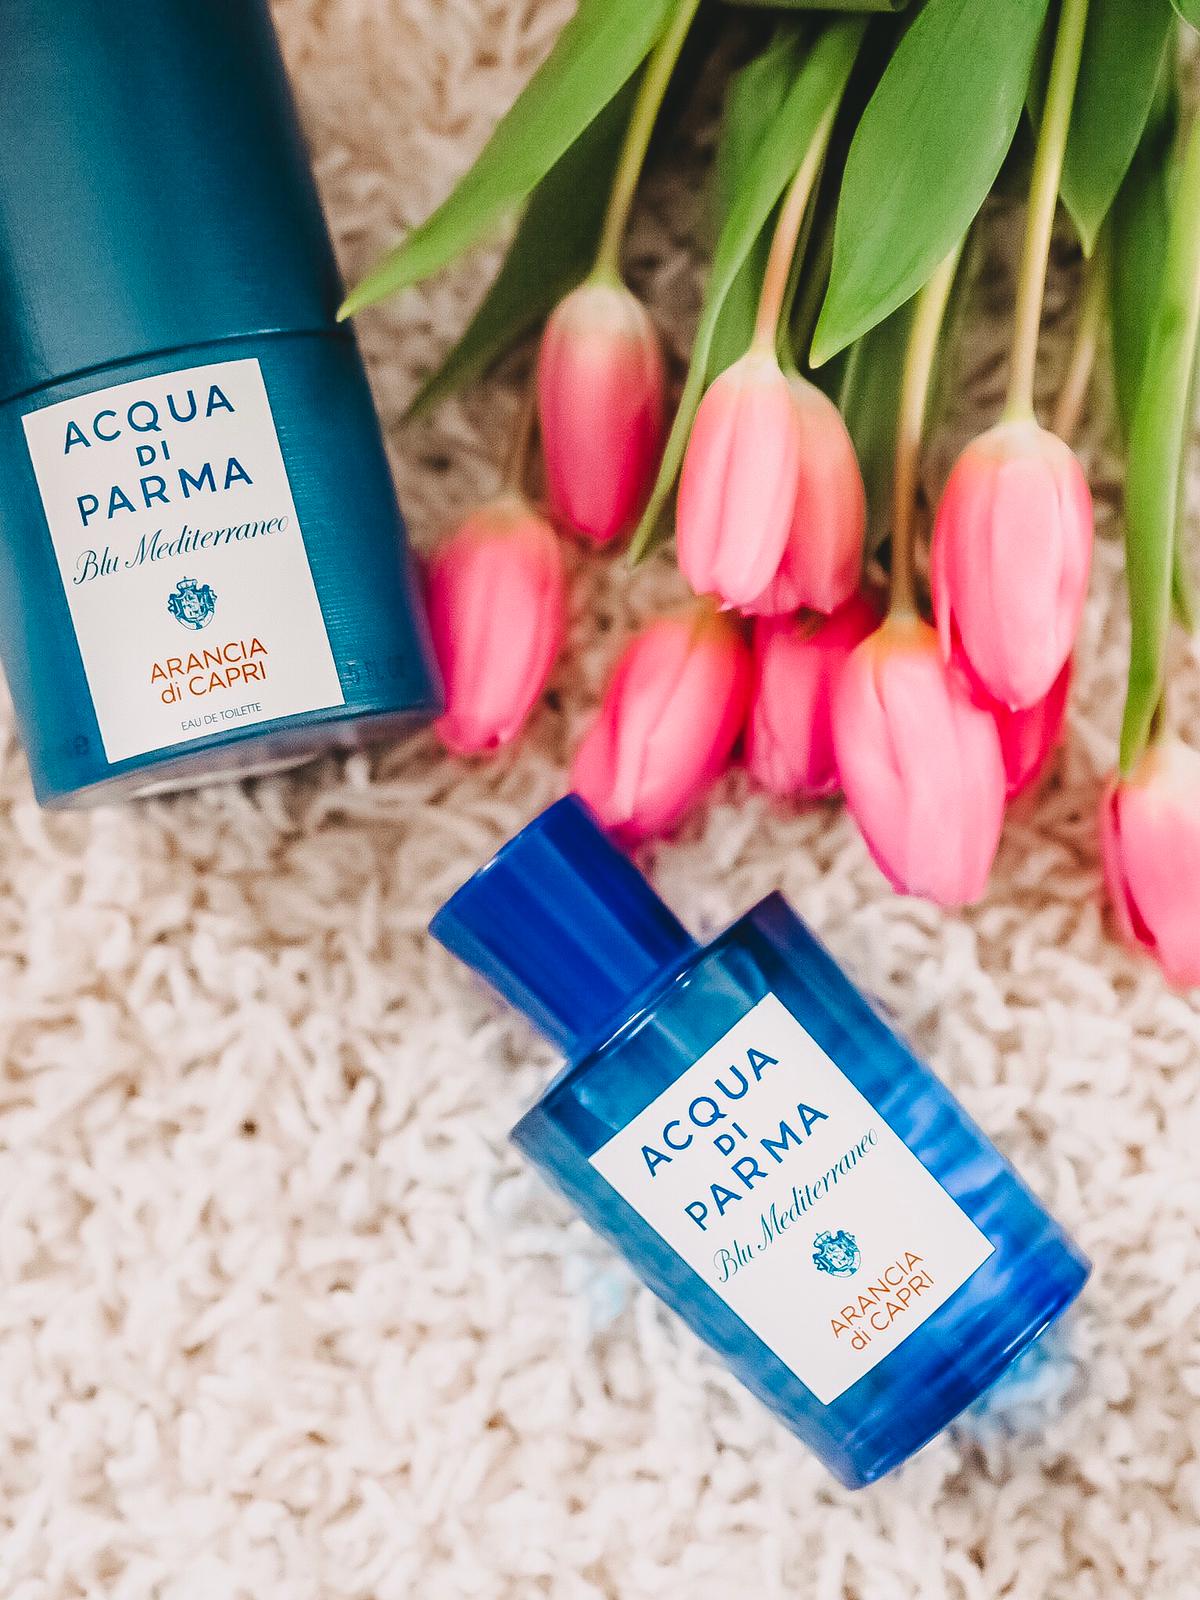 Tolle Düfte von Acqua di Parma könnt ihr bei Douglas kaufen. Heute stelle ich auf dem Beauty Blog meine 3 liebten Parfums der edlen Marke ausführlich vor.